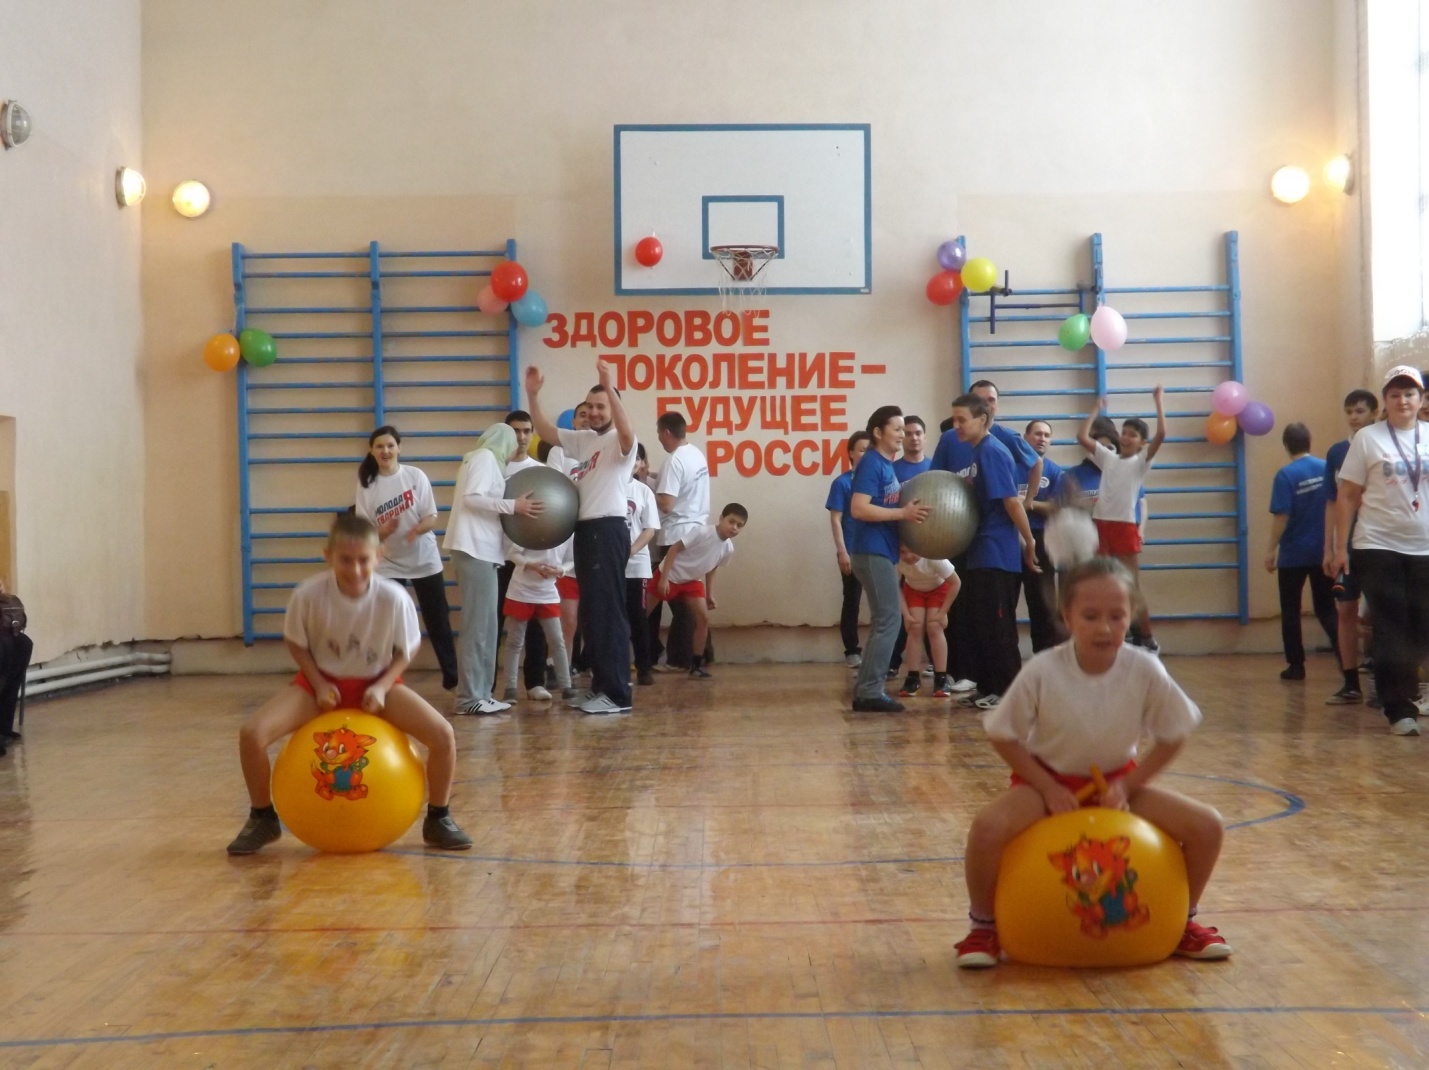 Сценарий спортивного праздника Здоровое поколение- будущее России